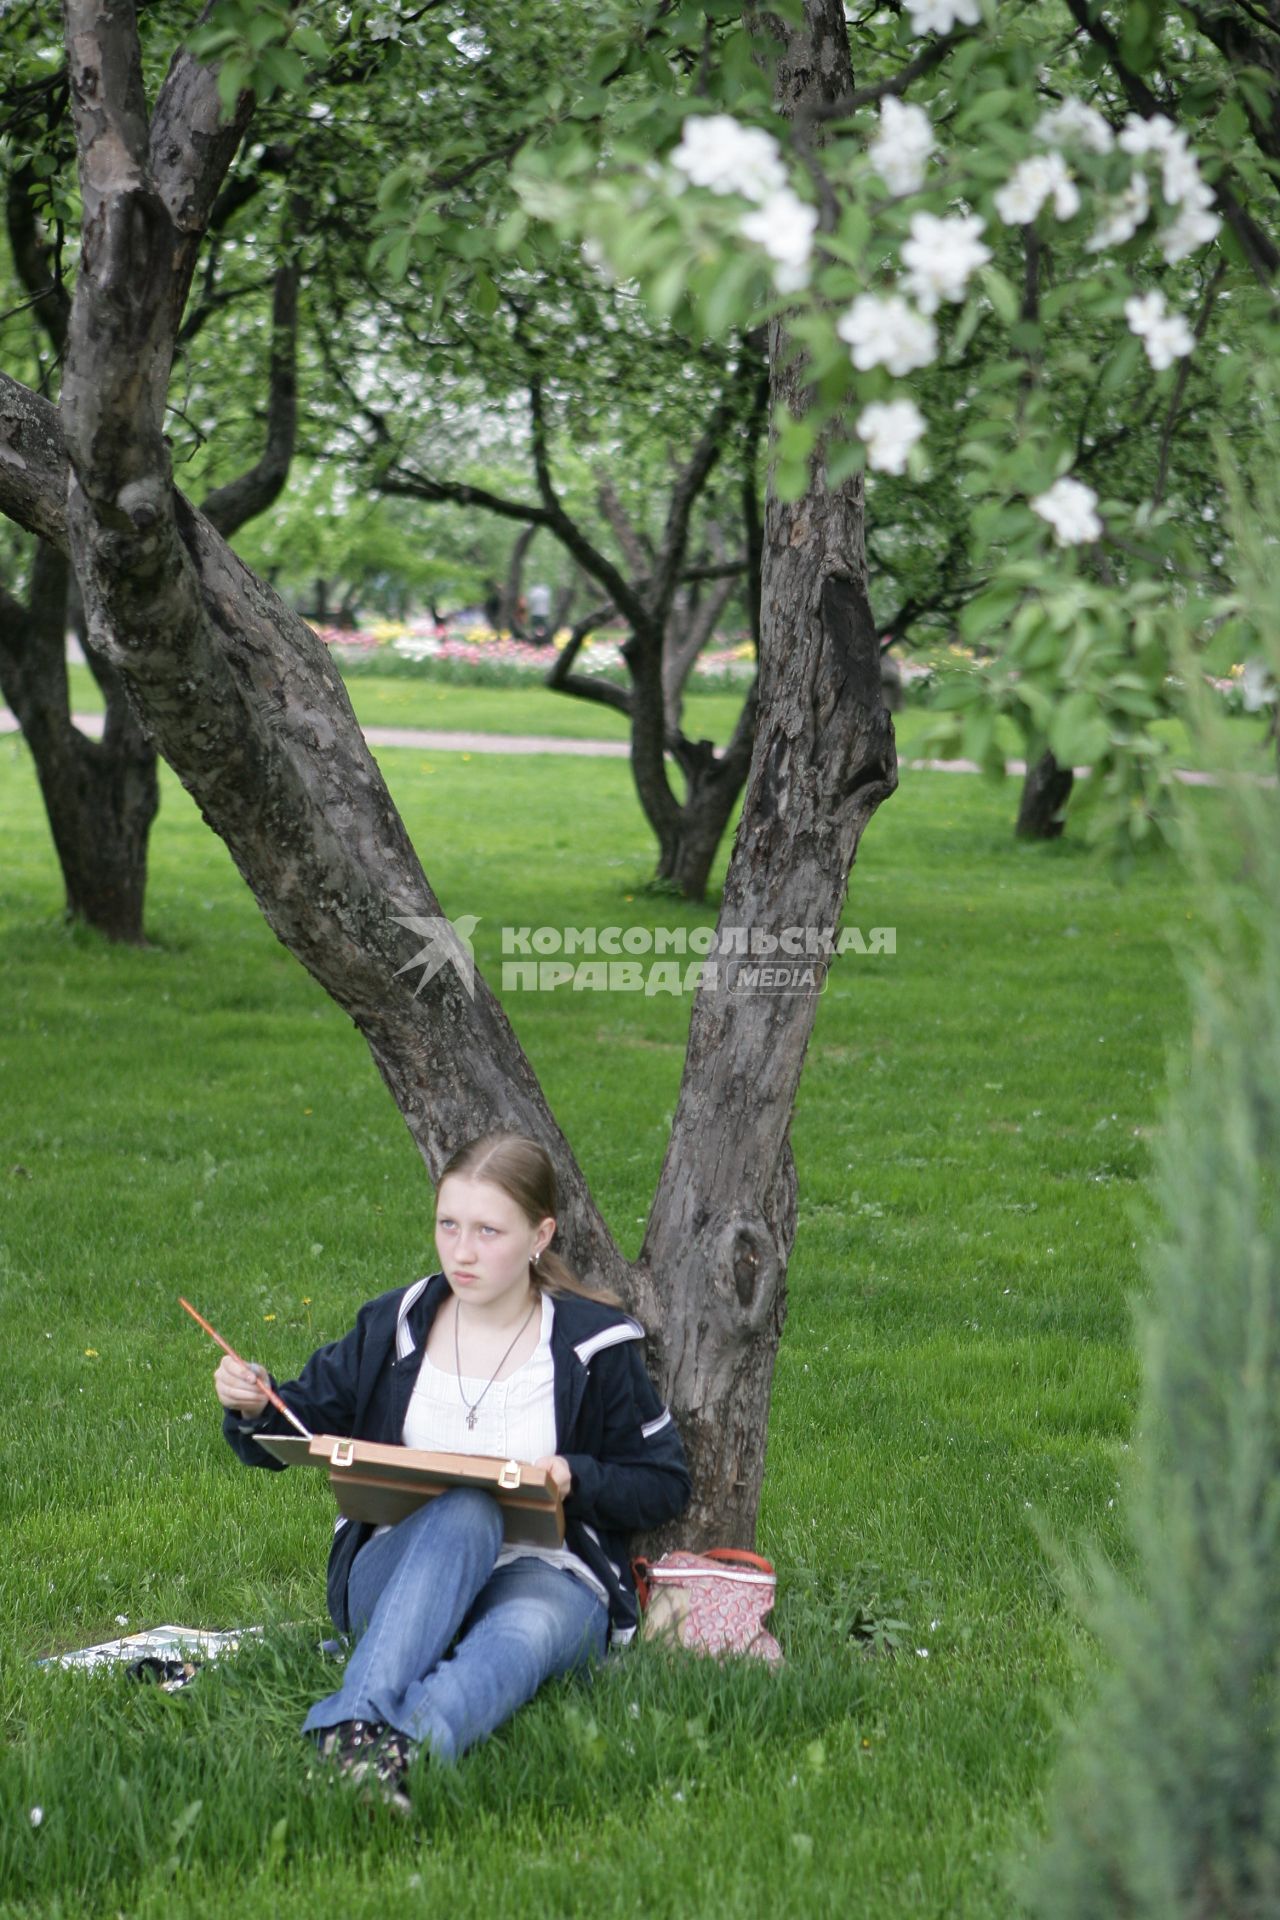 Музей-заповедник `Коломенское`. На снимке: девушка рисует в яблоневом саду.